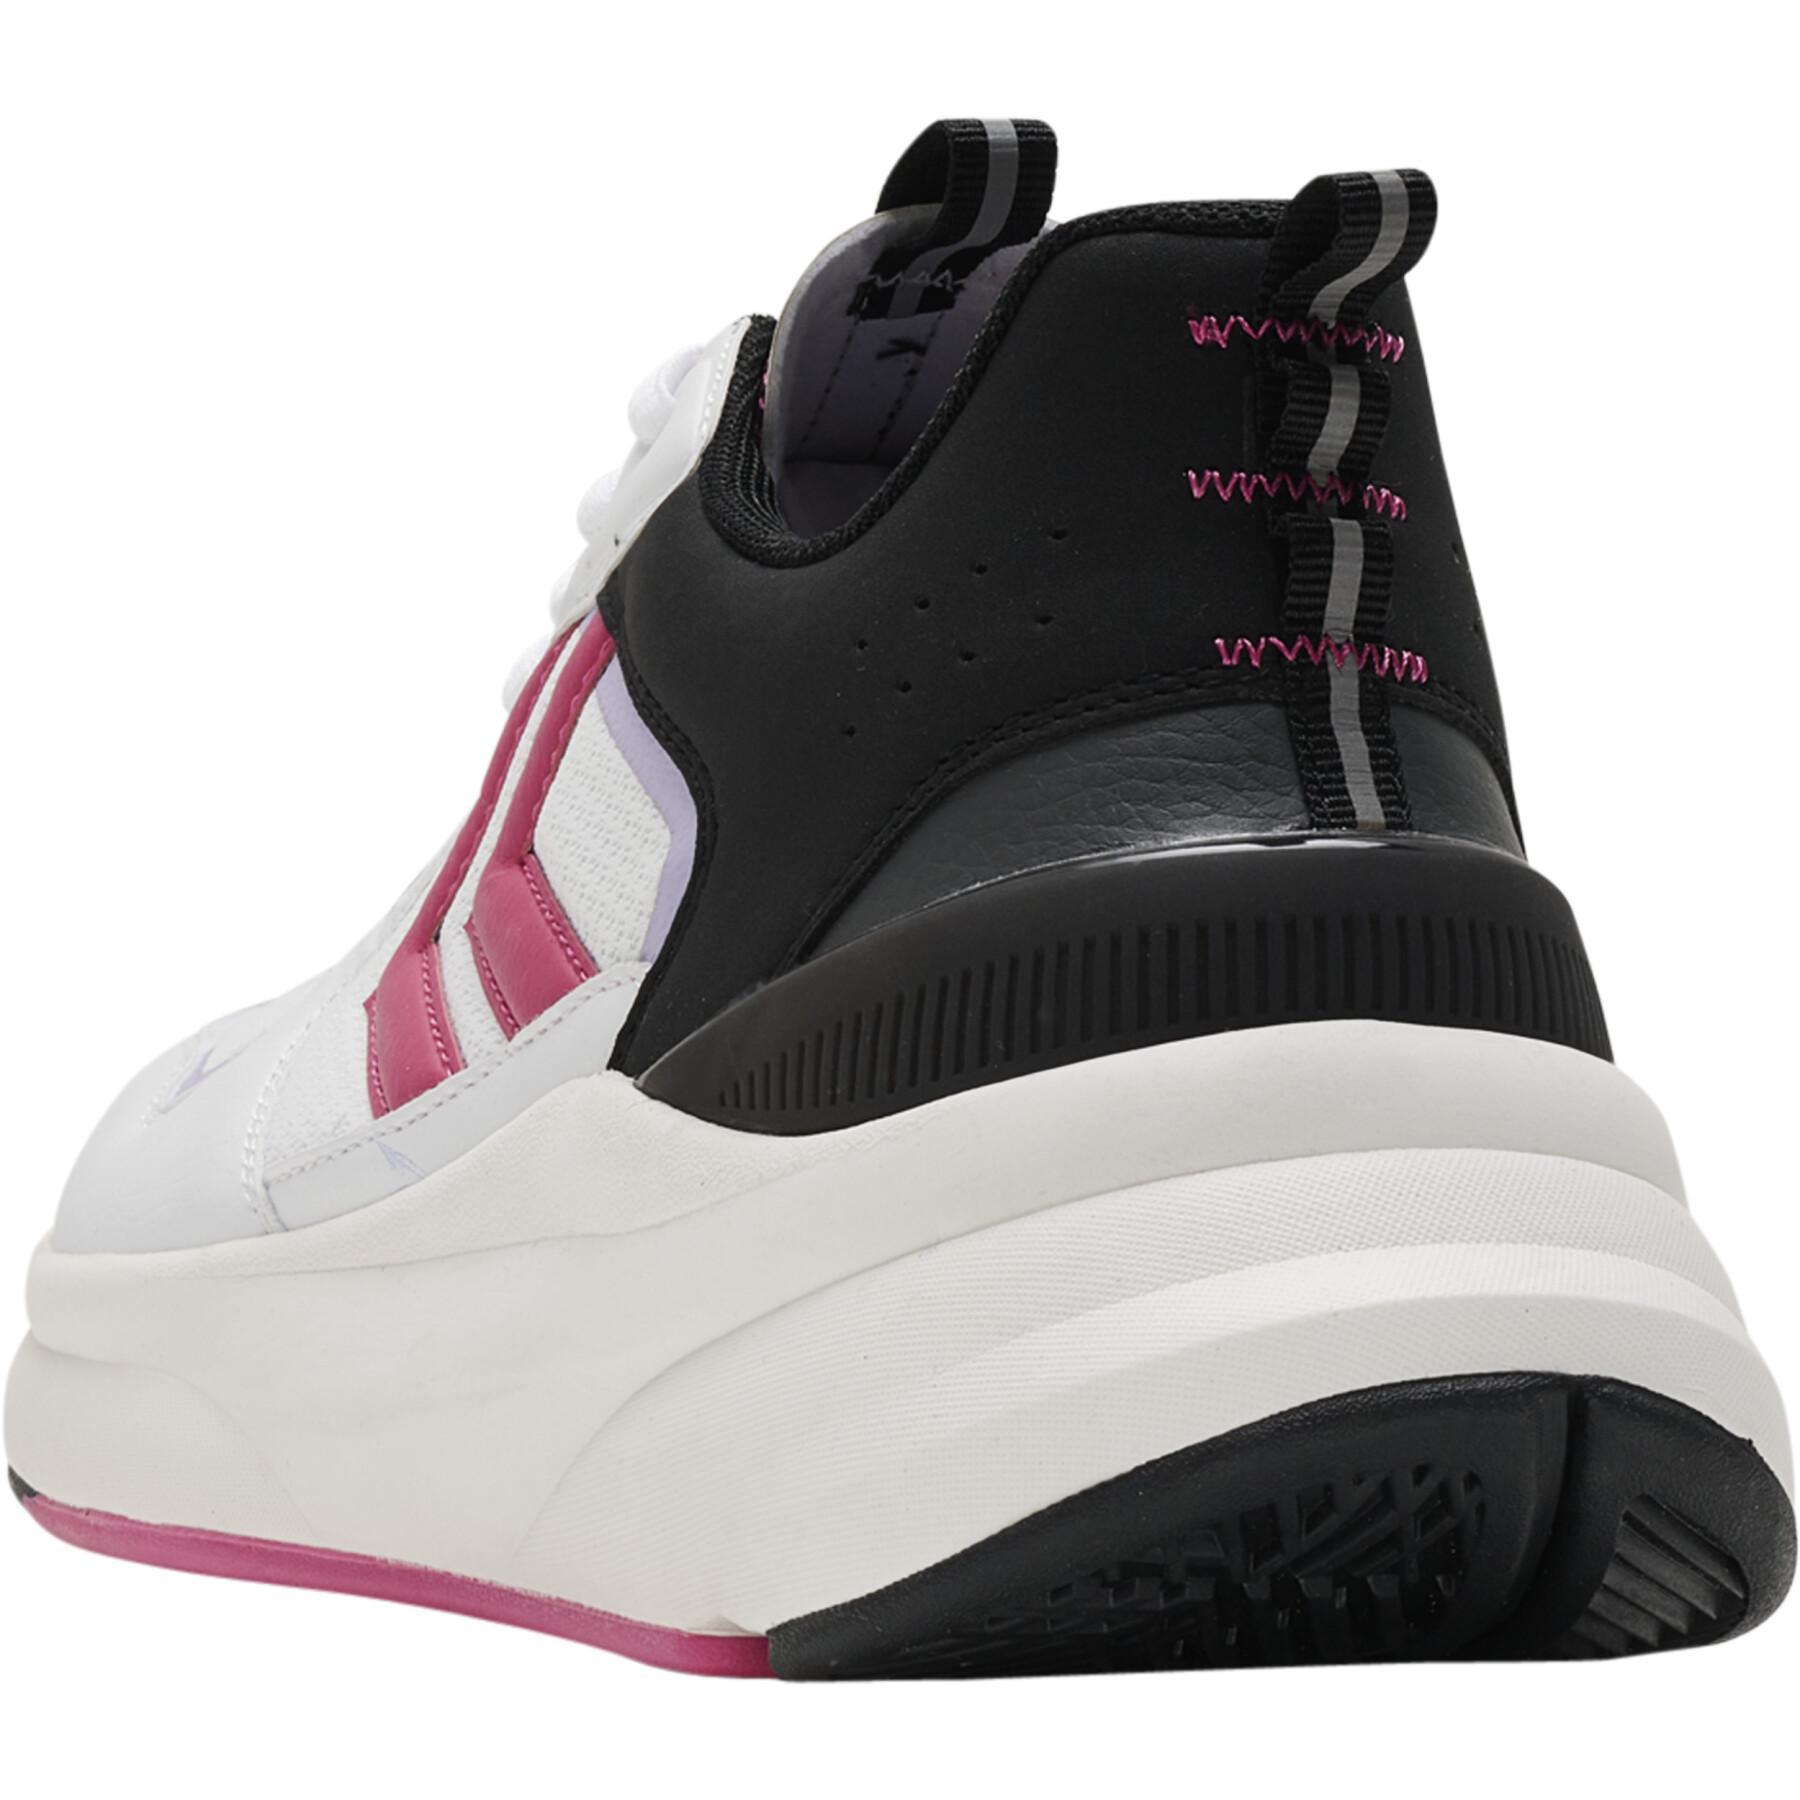 Women's sneakers Hummel Reach Lx 800 Block